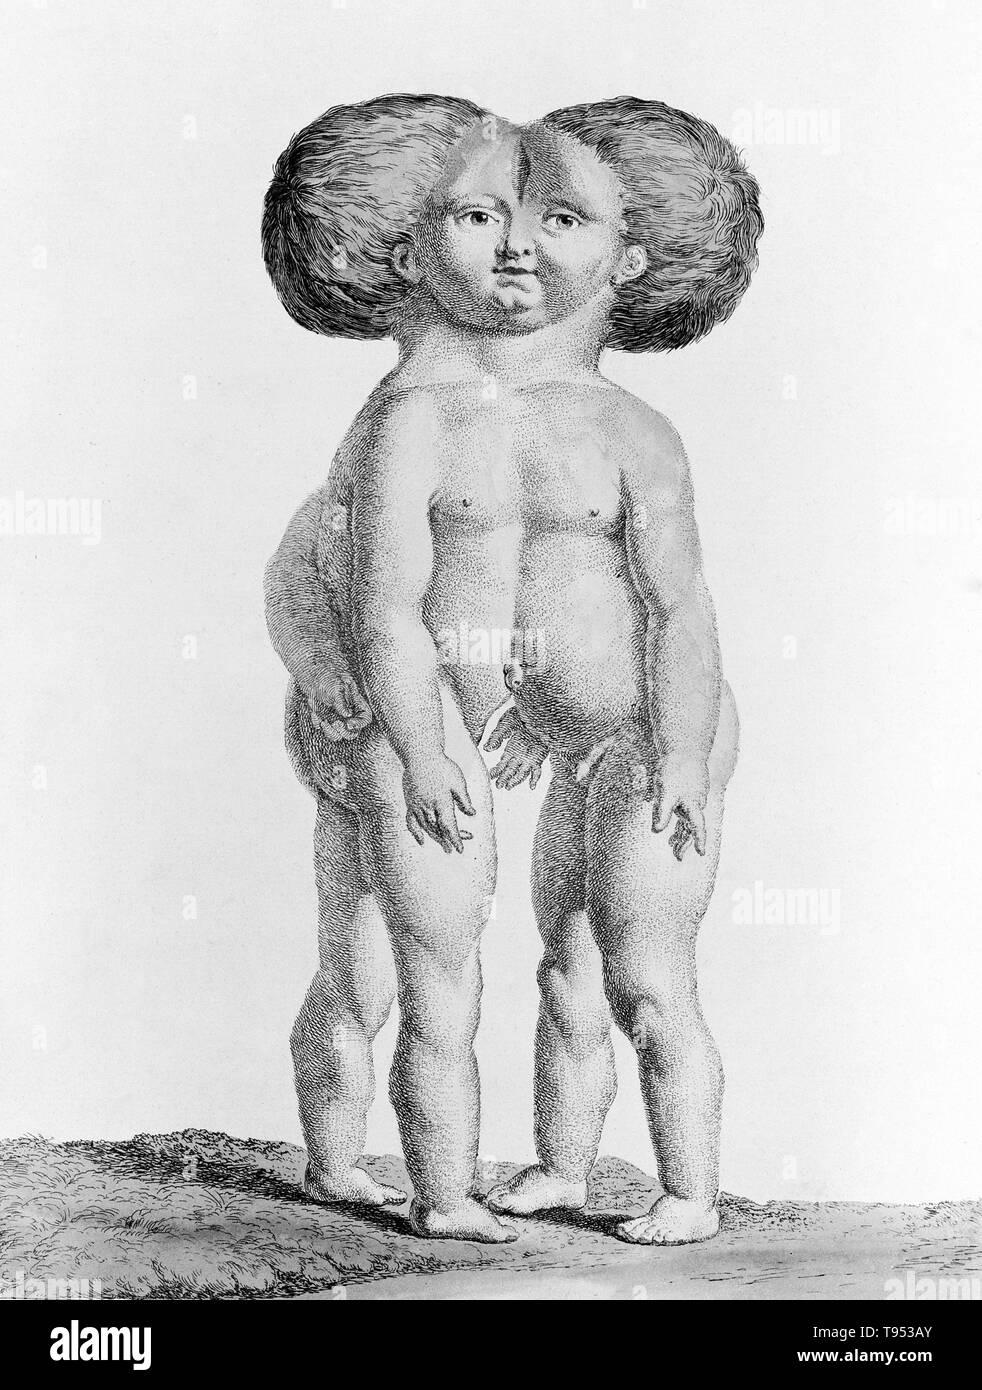 Siameses, desde 1775. Grabado por Nicolas-Francois Regnault y titulado 'Doble niño'. Foto de stock